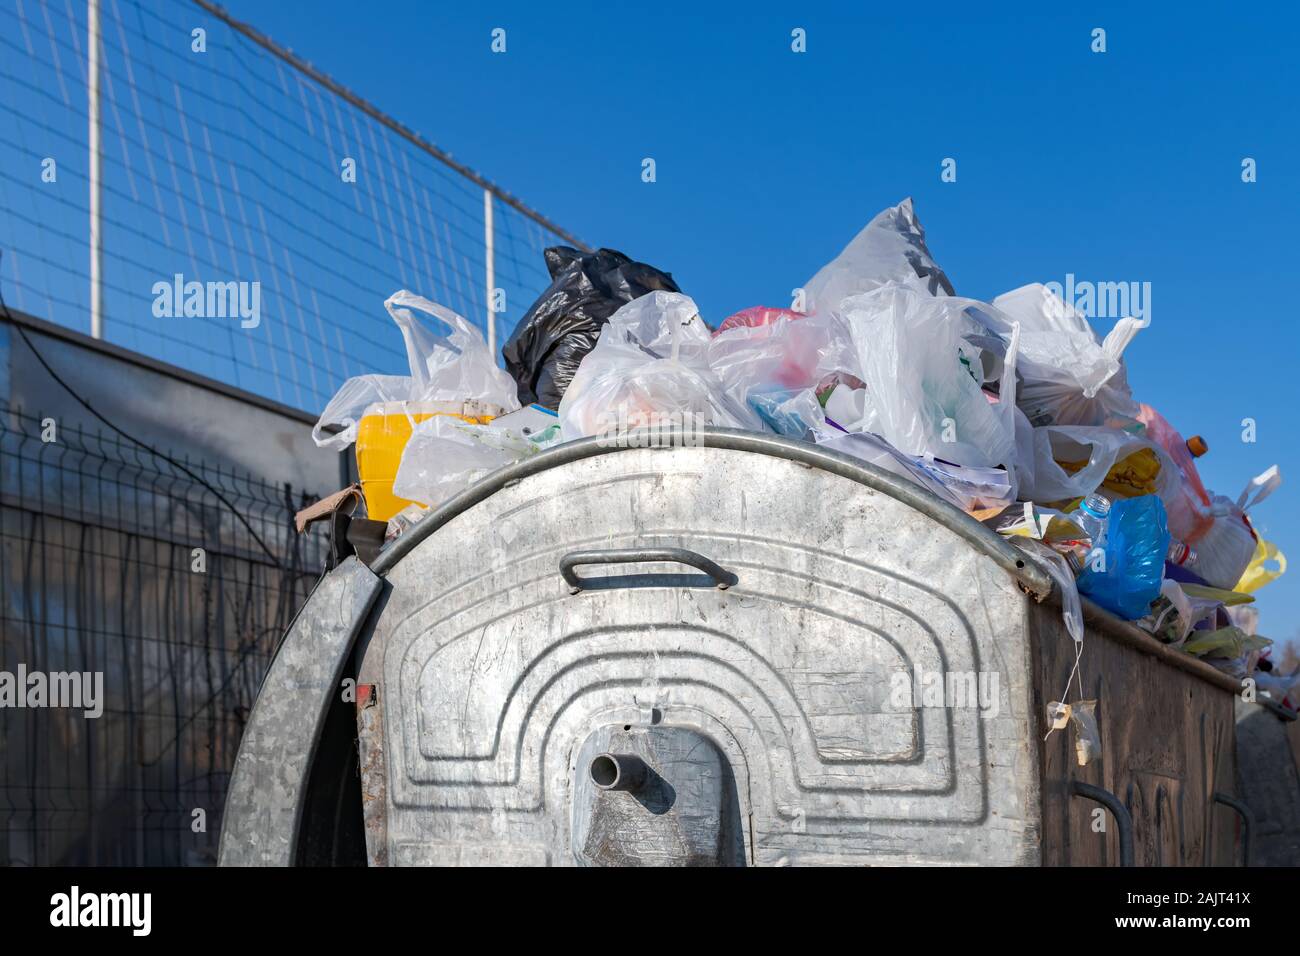 Conteneurs à déchets surchargés on city street Banque D'Images